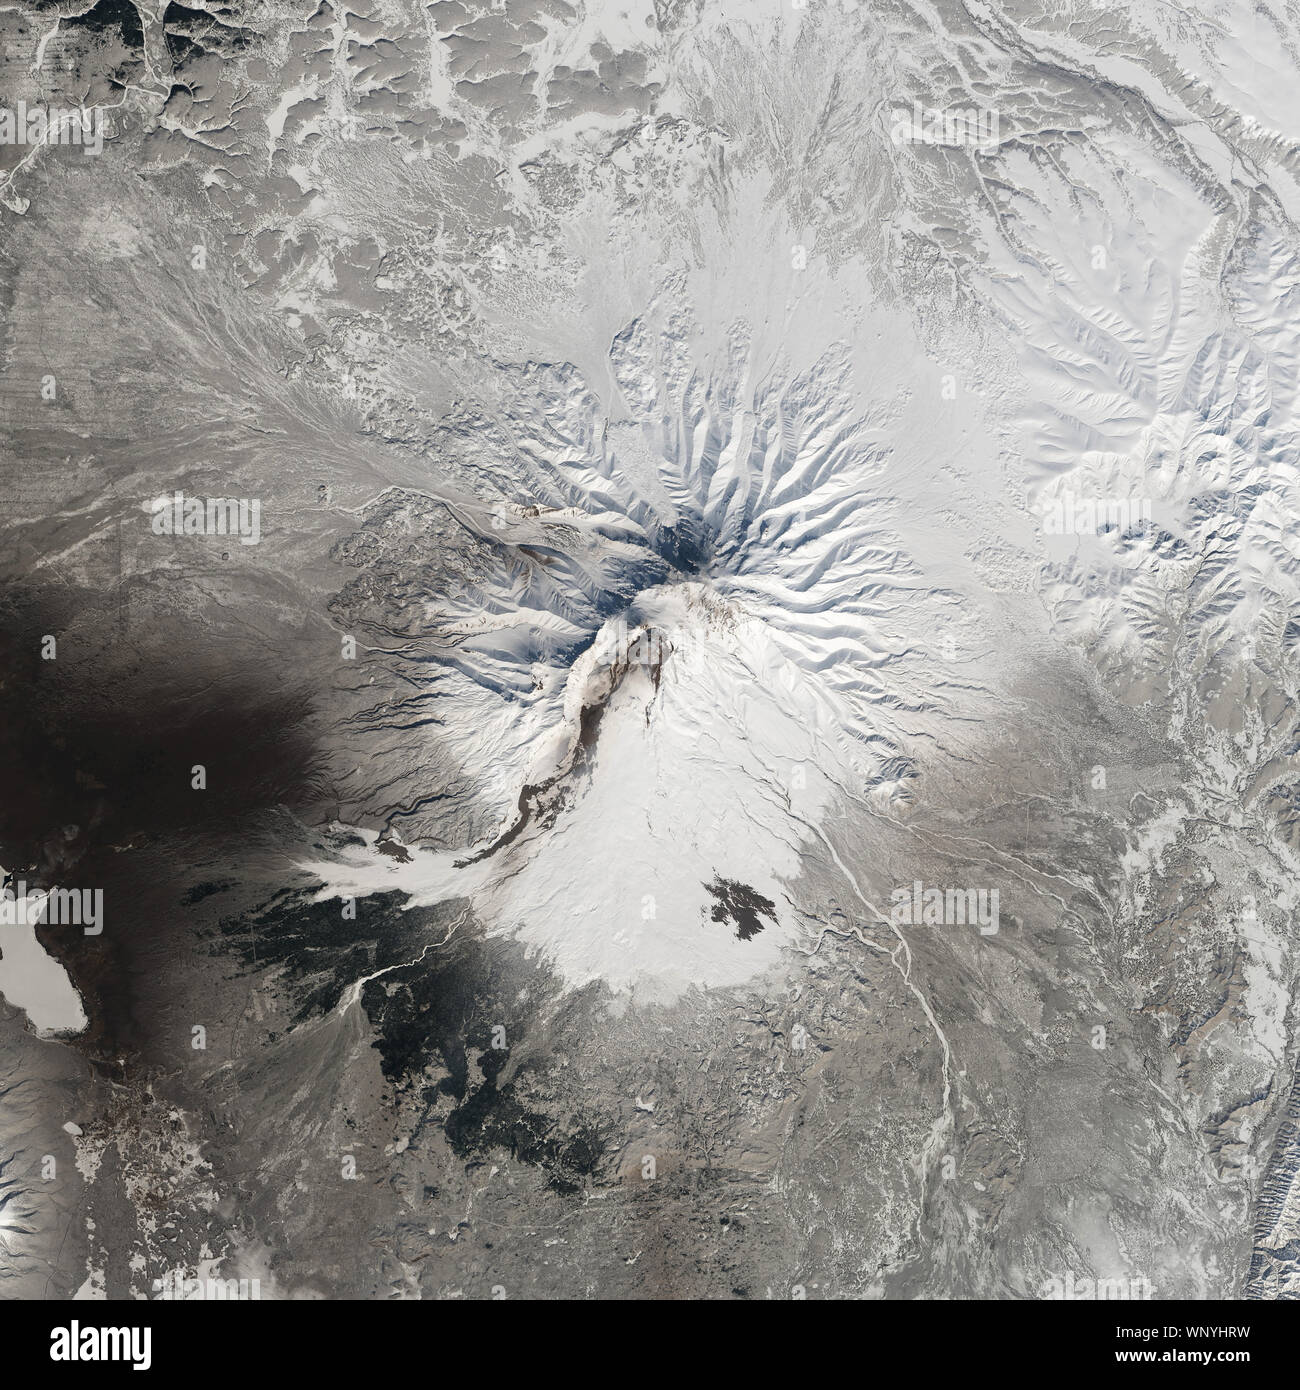 Volcán Shiveluch, activo, la Península de Kamchatka, Rusia, 14 de abril de 2014, por la NASA/Robert Simmon/DPA Foto de stock